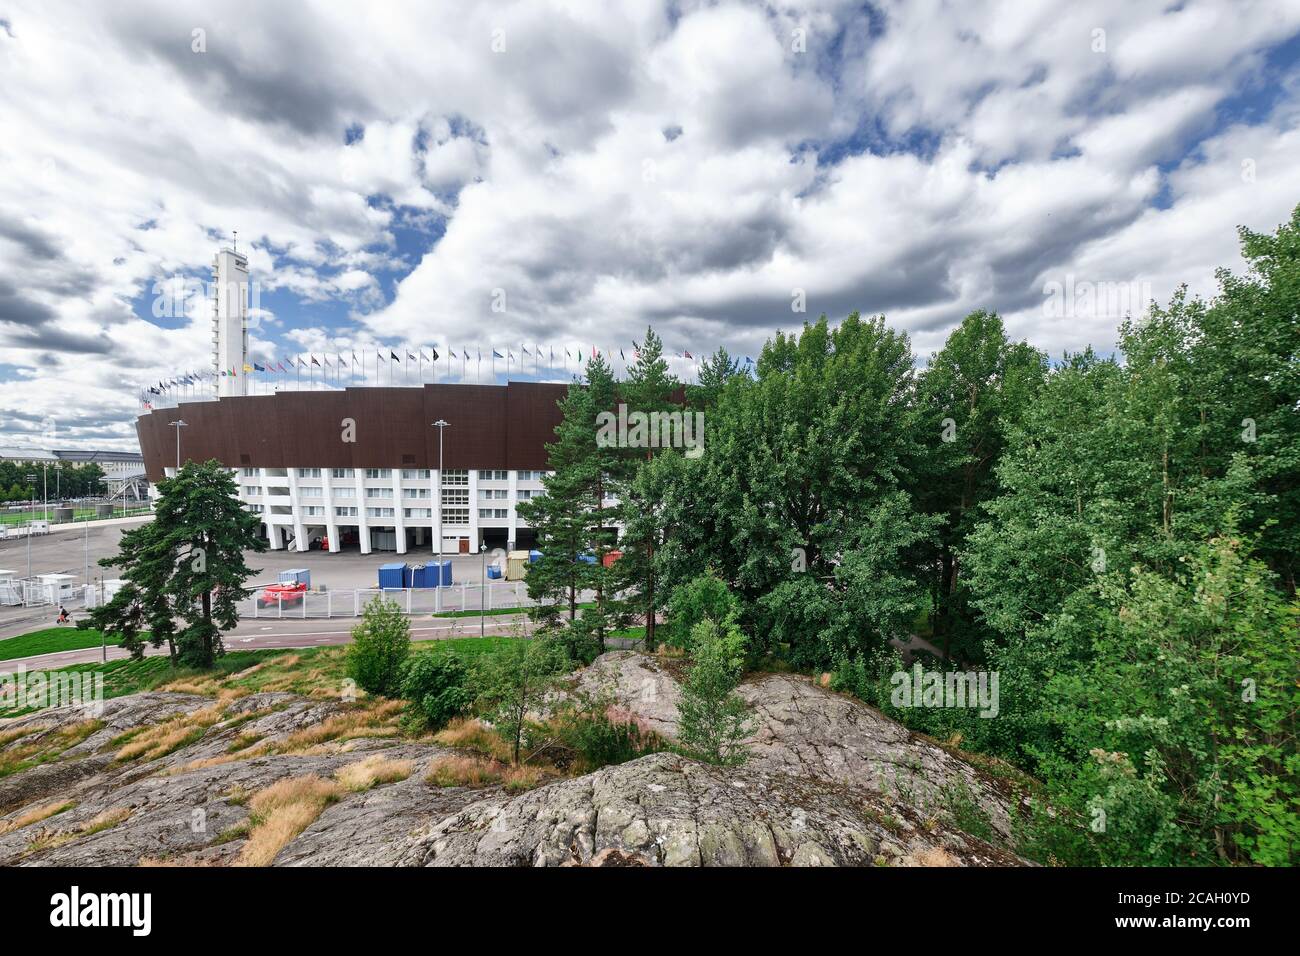 Helsinki, Finlande - 1er août 2020 : façade du stade olympique d'Helsinki après rénovation. Banque D'Images